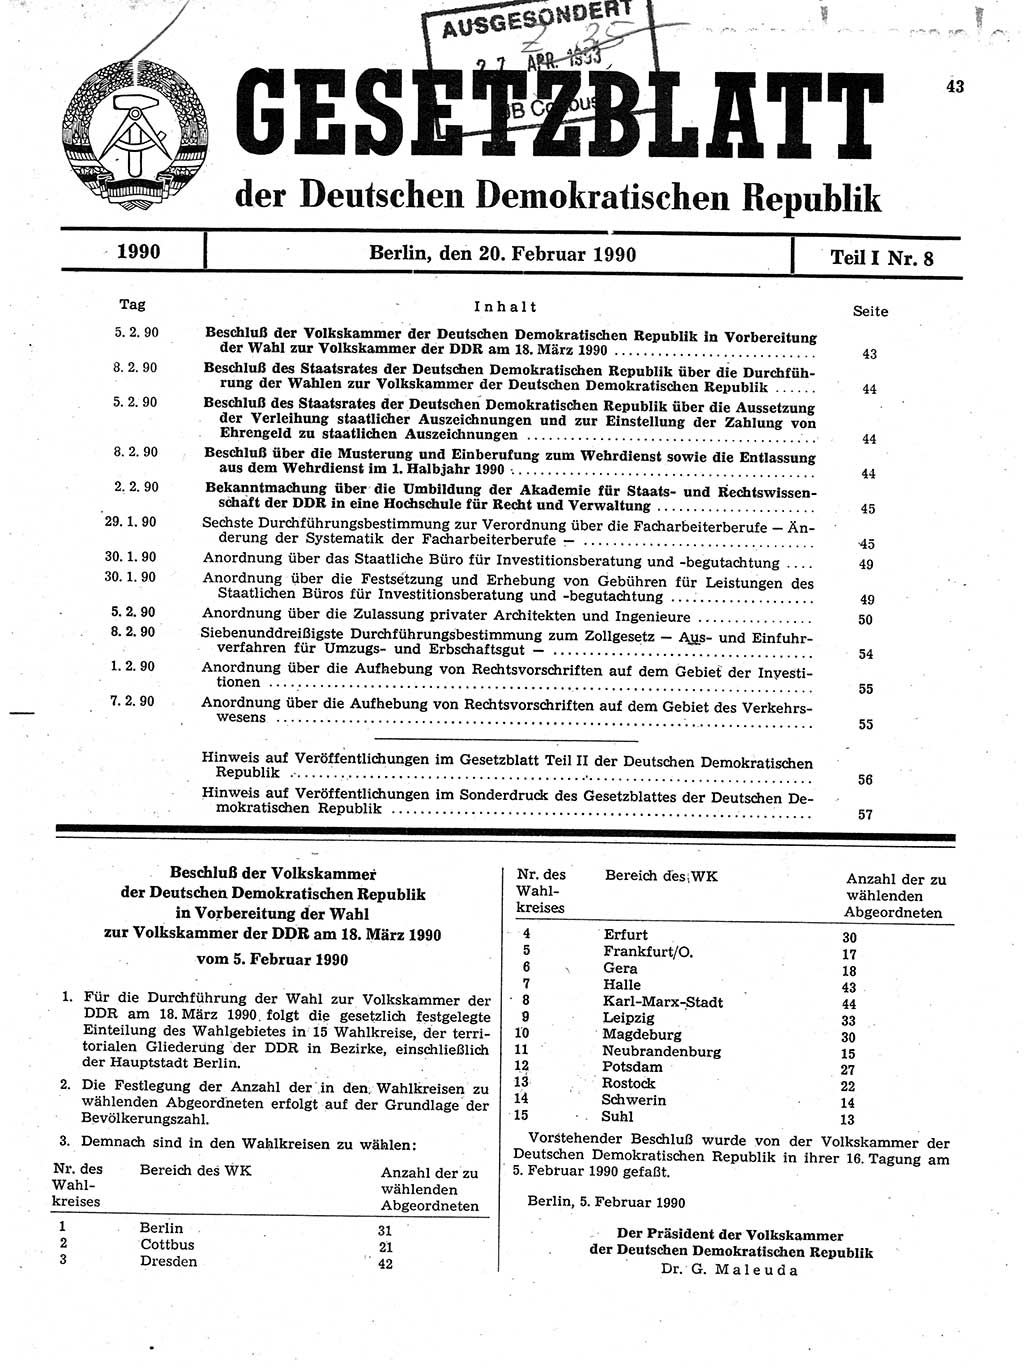 Gesetzblatt (GBl.) der Deutschen Demokratischen Republik (DDR) Teil Ⅰ 1990, Seite 43 (GBl. DDR Ⅰ 1990, S. 43)